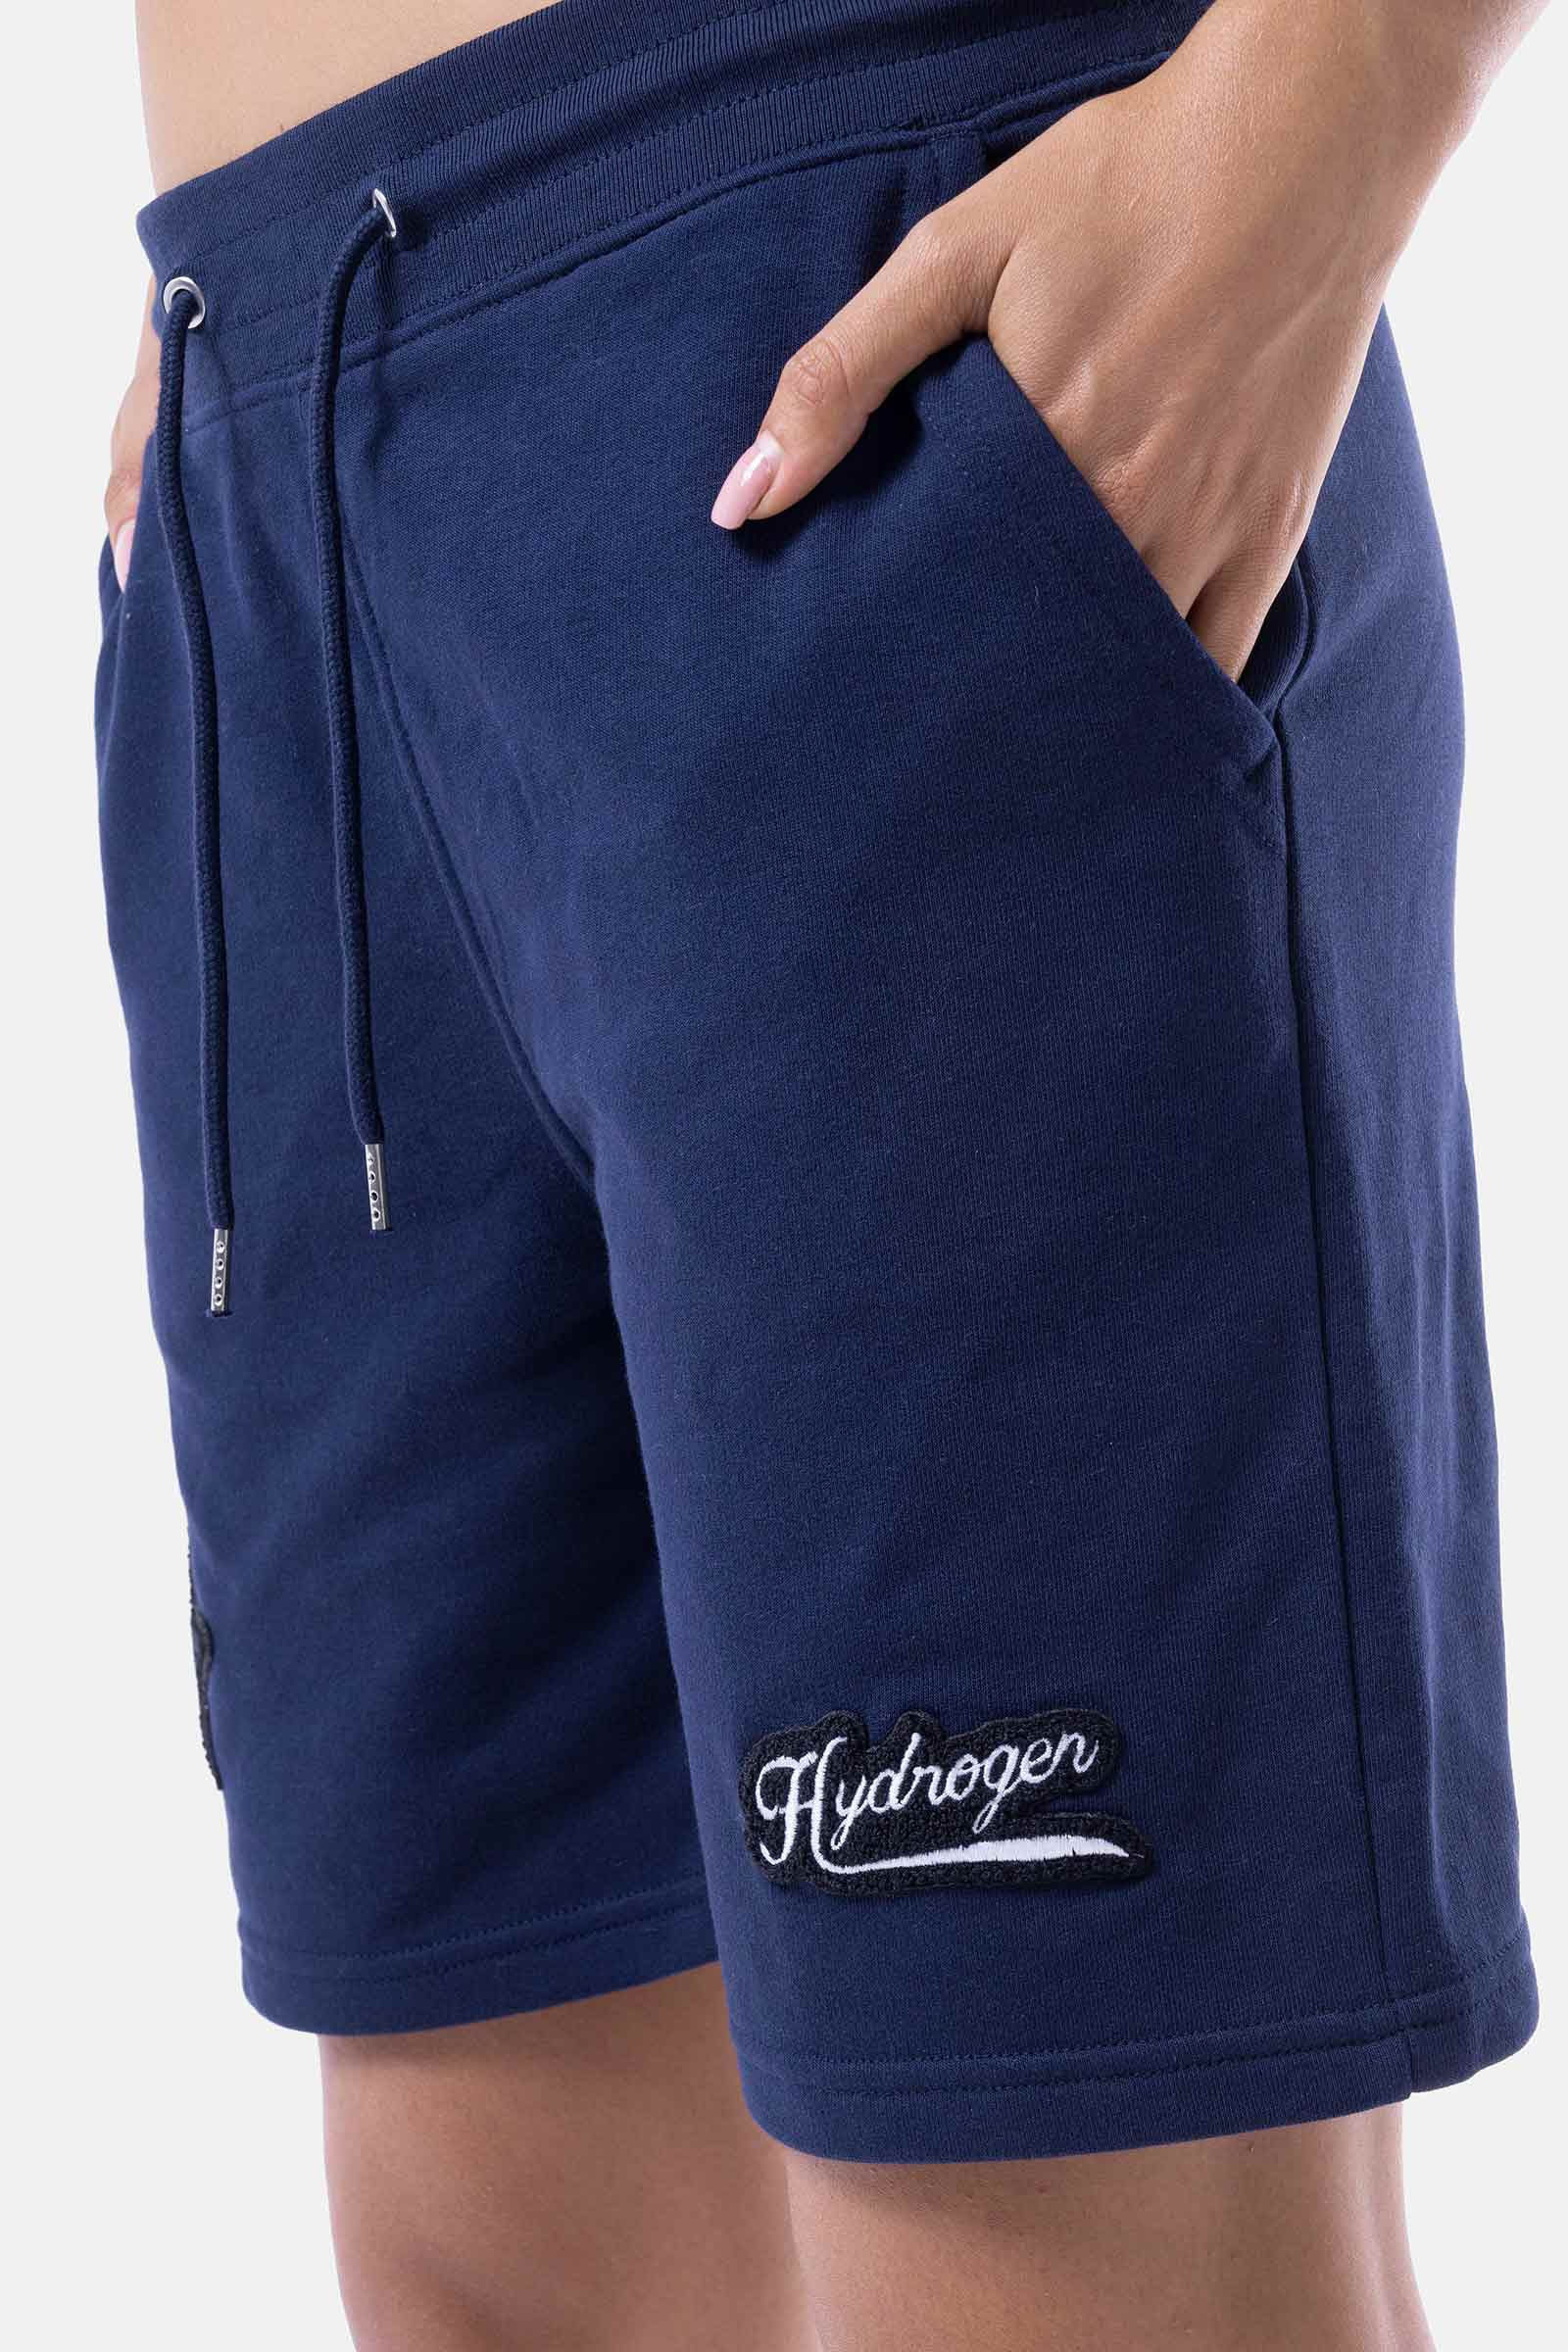 SHIELD SHORTS - BLUE - Hydrogen - Luxury Sportwear